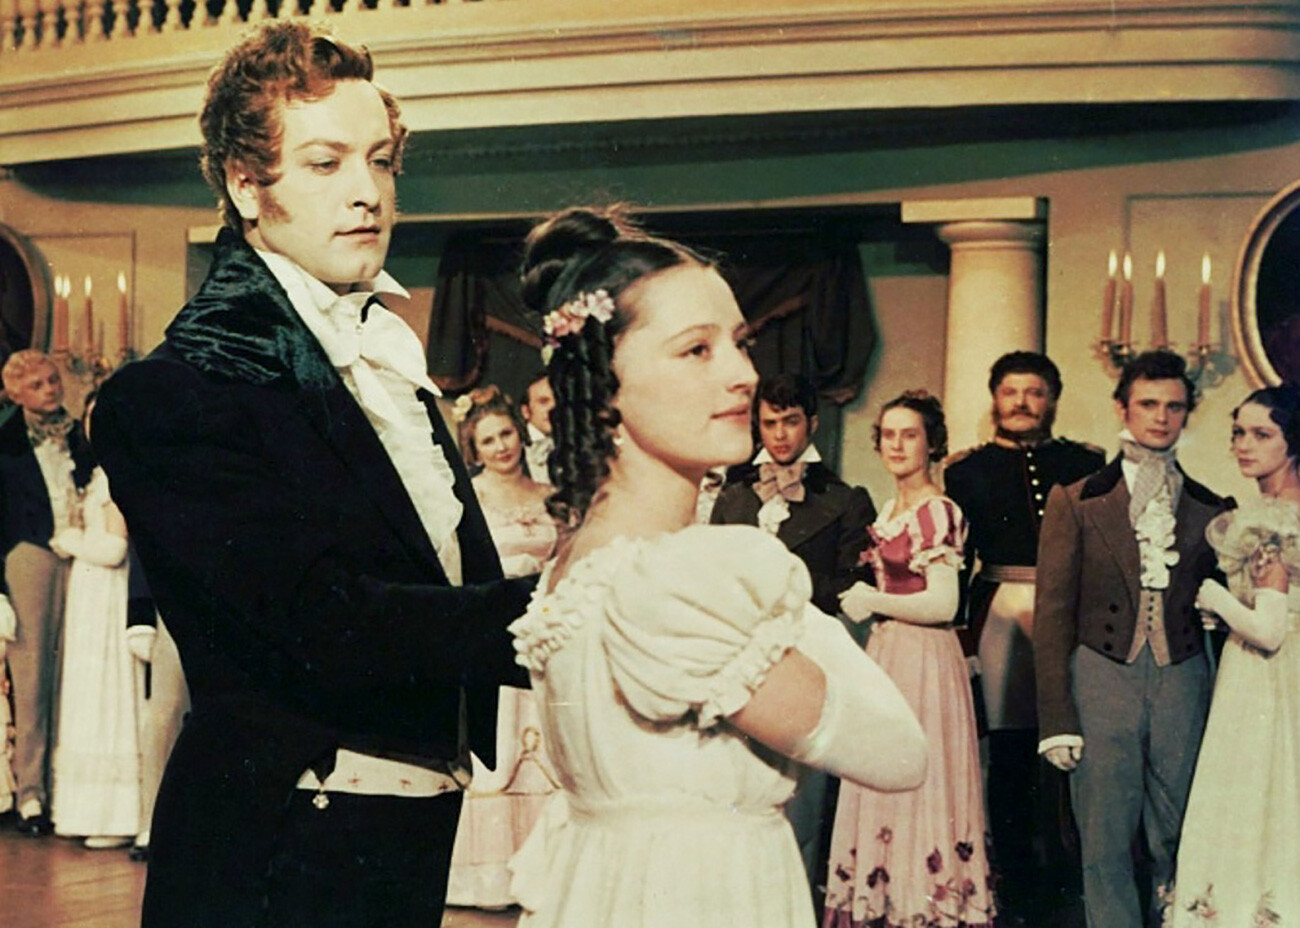 Fermo immagine dal film sovietico del 1958 “Evgenij Onegin”